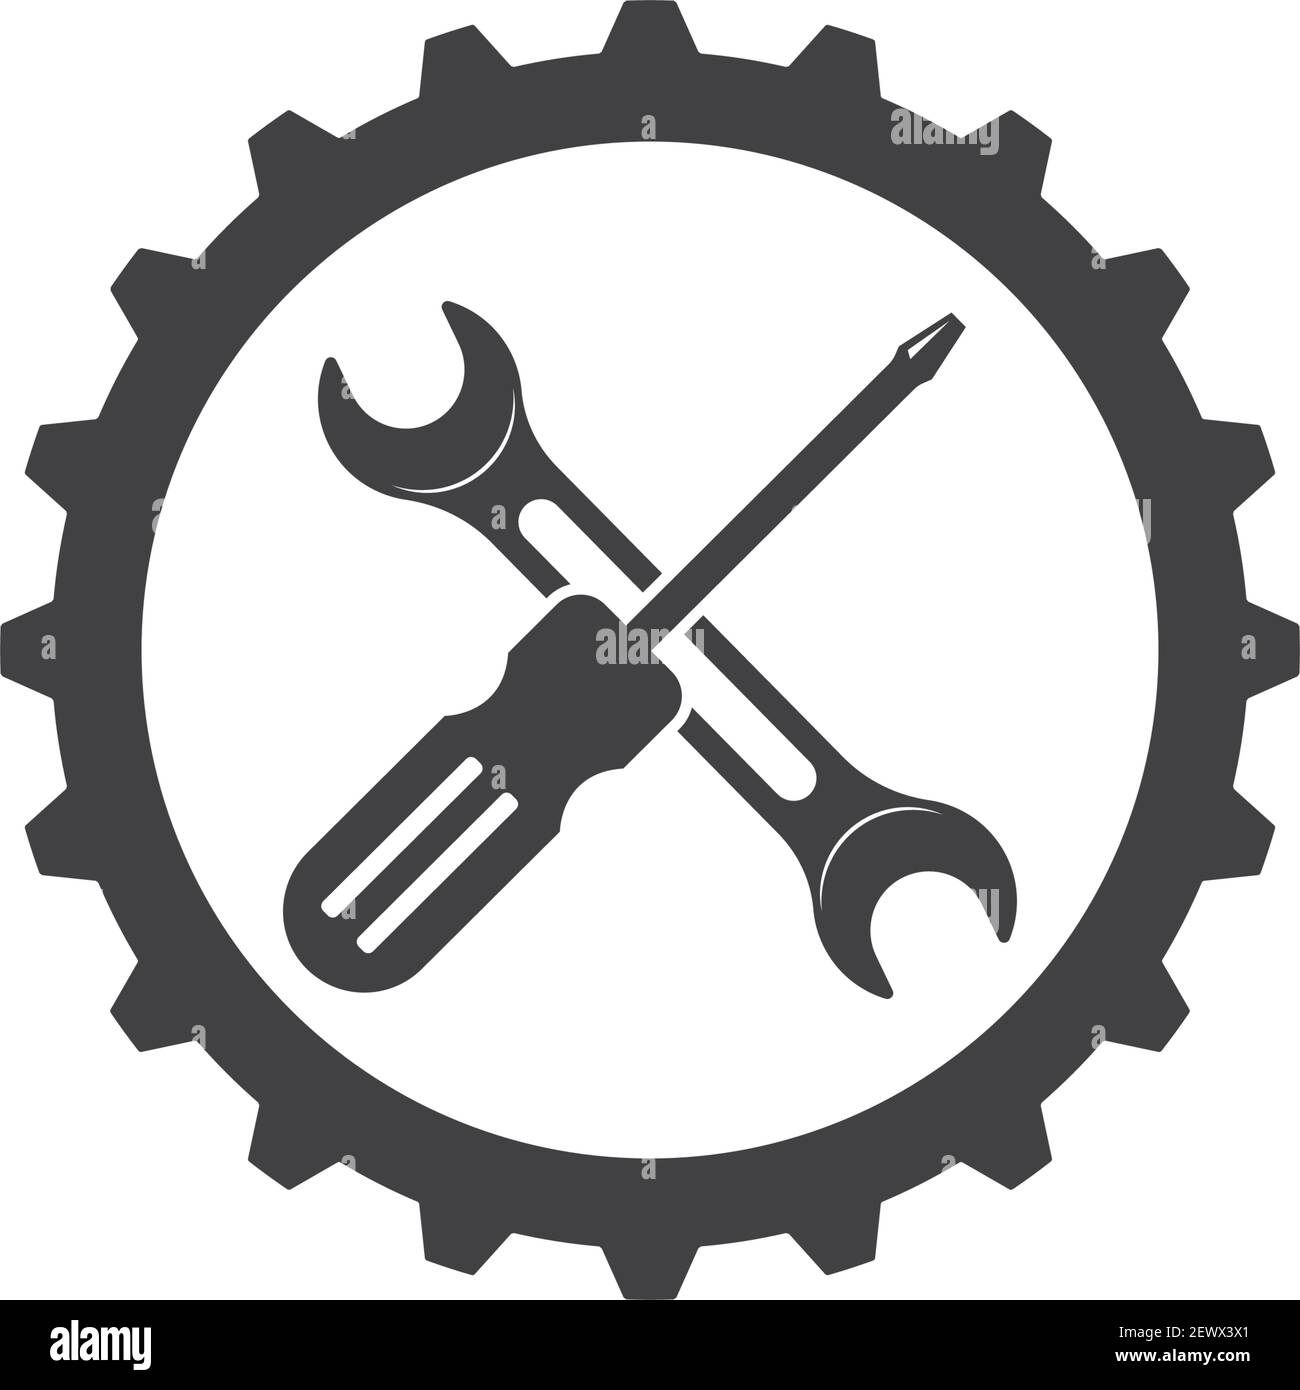 Schraubenschlüssel Vektorgrafik und Symbol der Kfz-Reparatur-Design  Stock-Vektorgrafik - Alamy